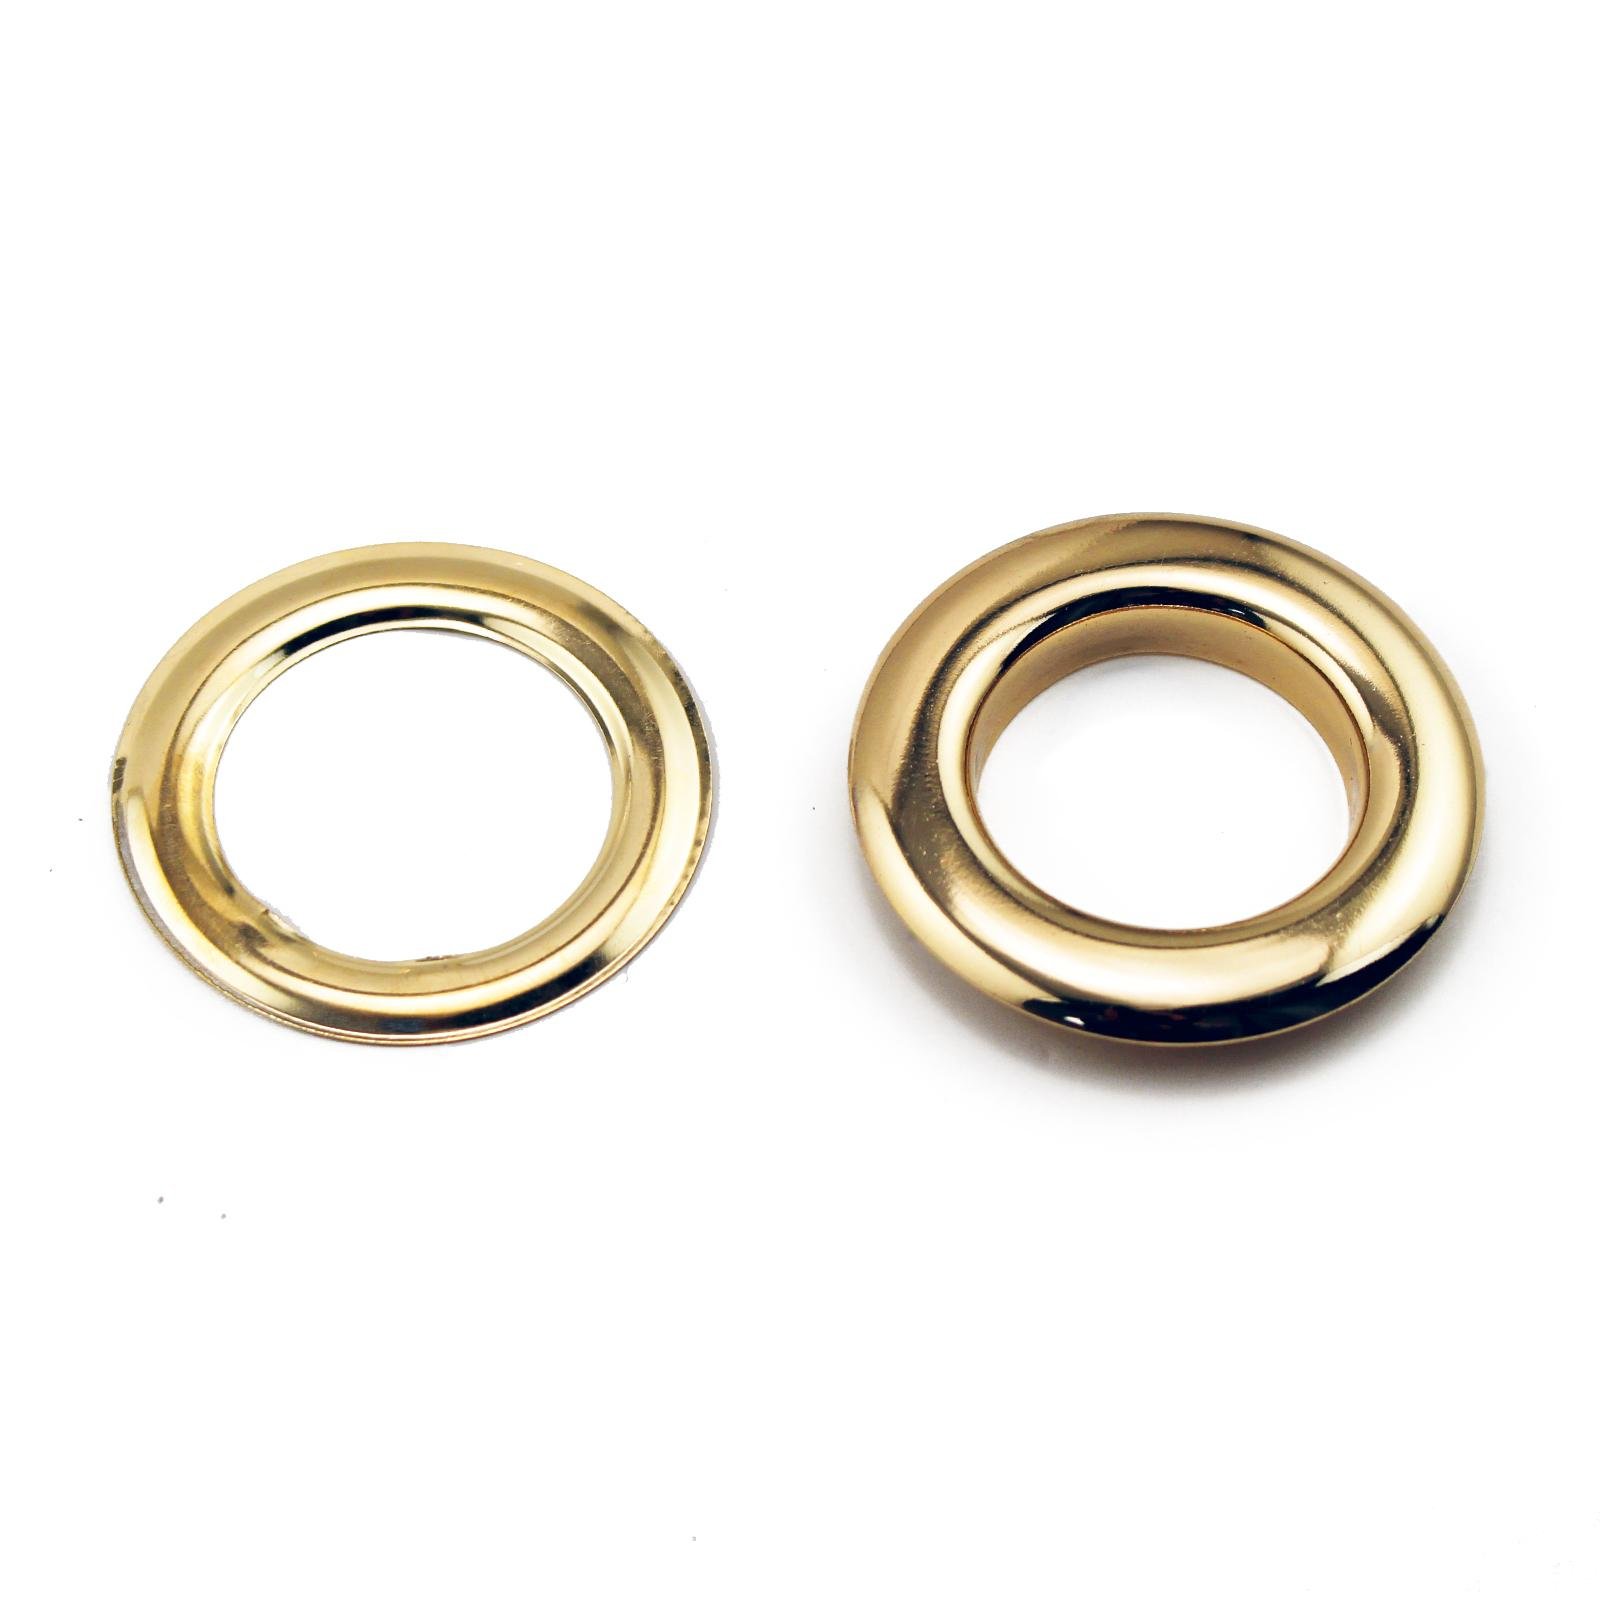 Hardware metal plating round ring metal buckle ring 3